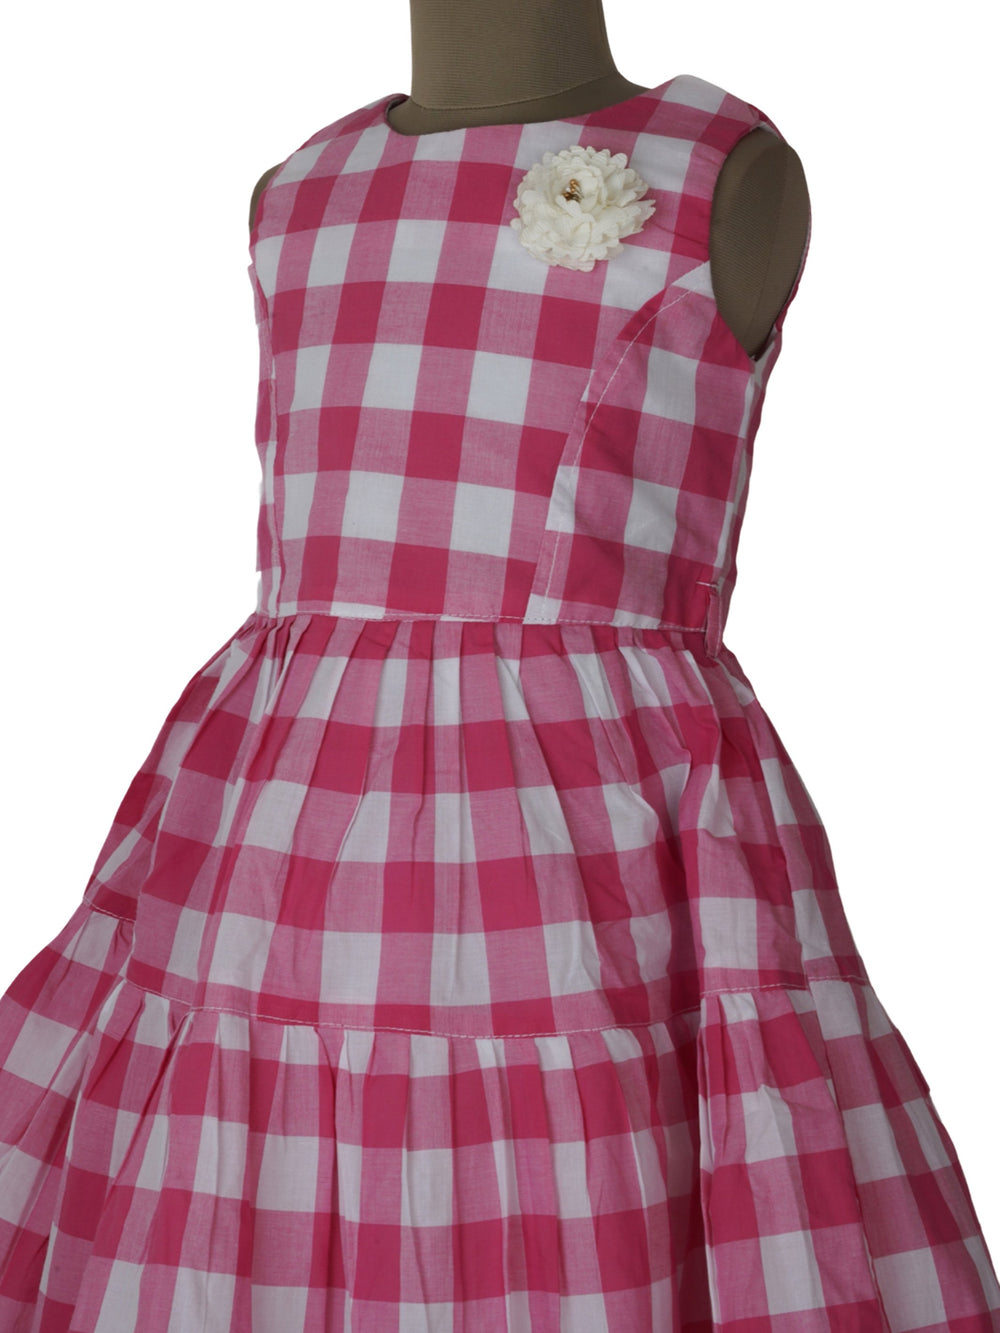 The Nesavu Frocks & Dresses Pink & White Checked Fullflair Cotton Dress For Little ones psr silks Nesavu